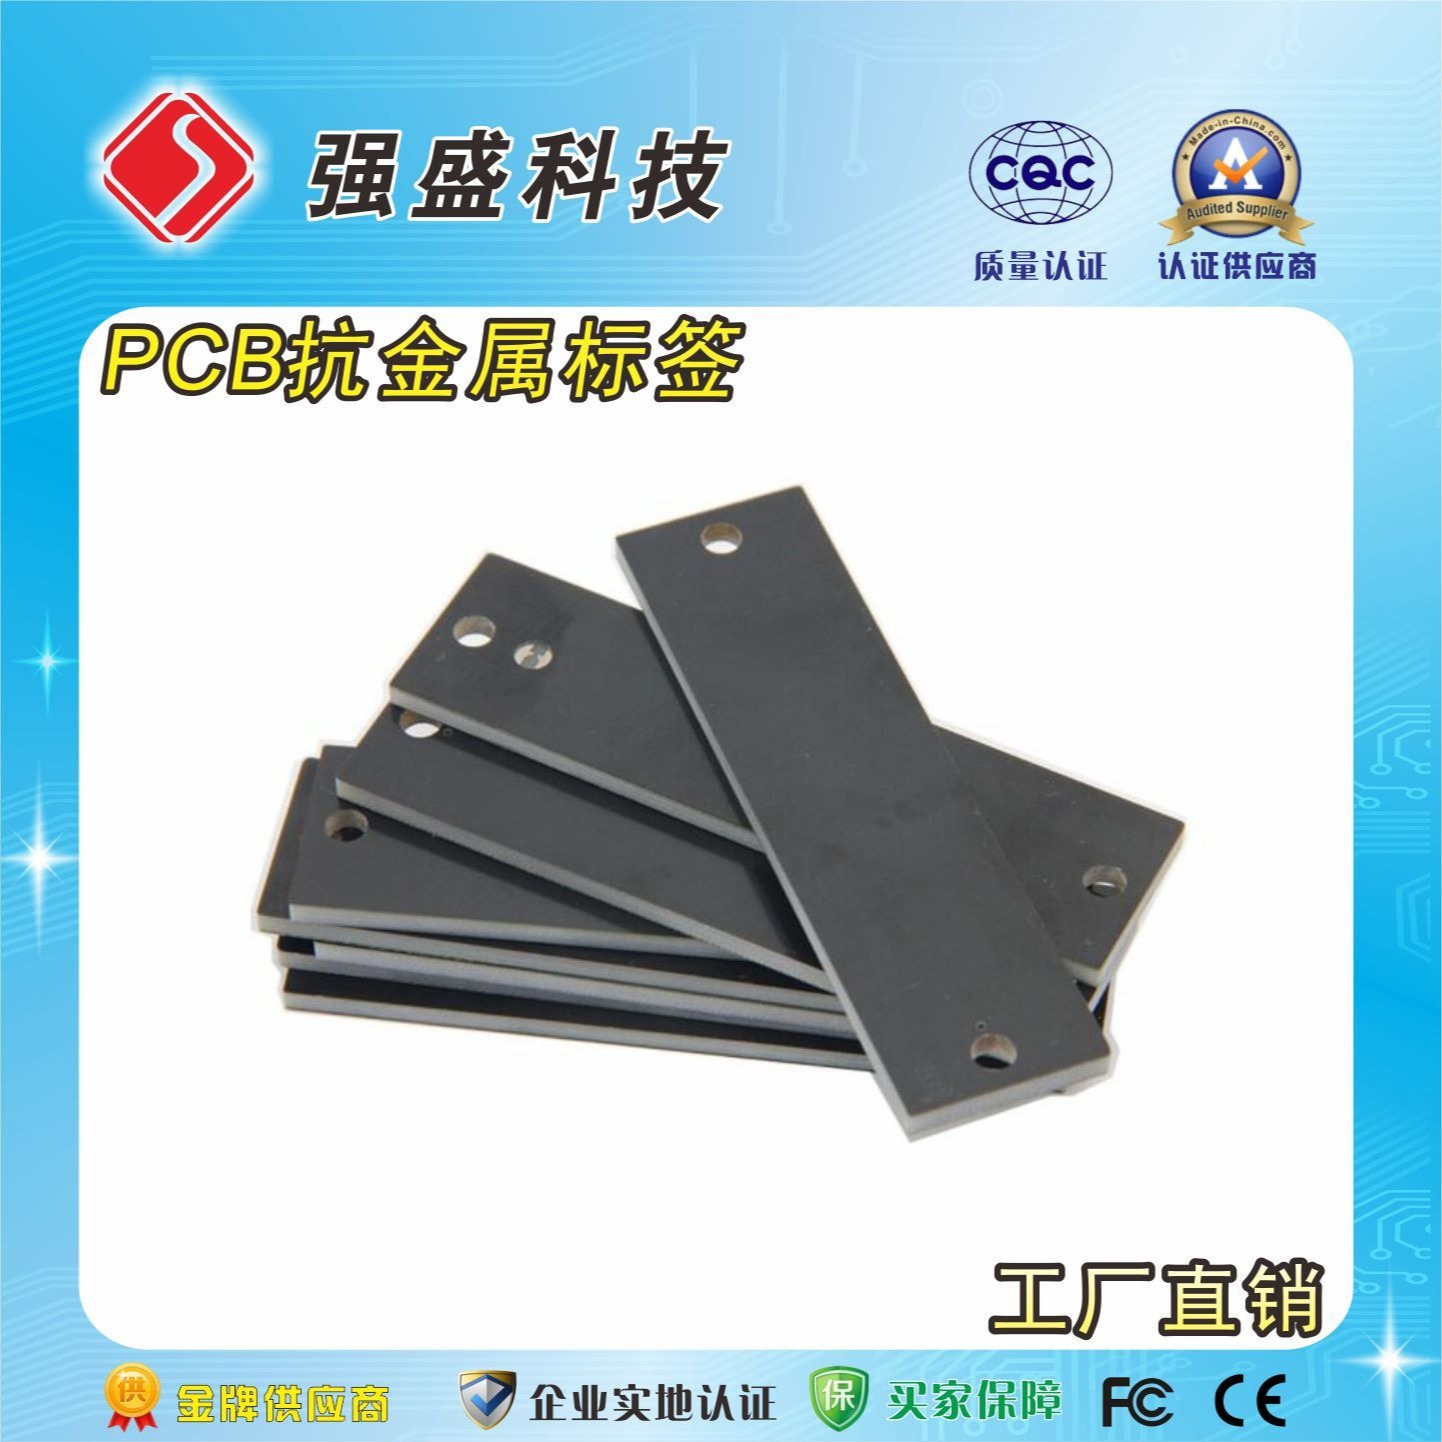 长条形PCB抗金属标签 95x25mm 远距离PCB托盘管理标签